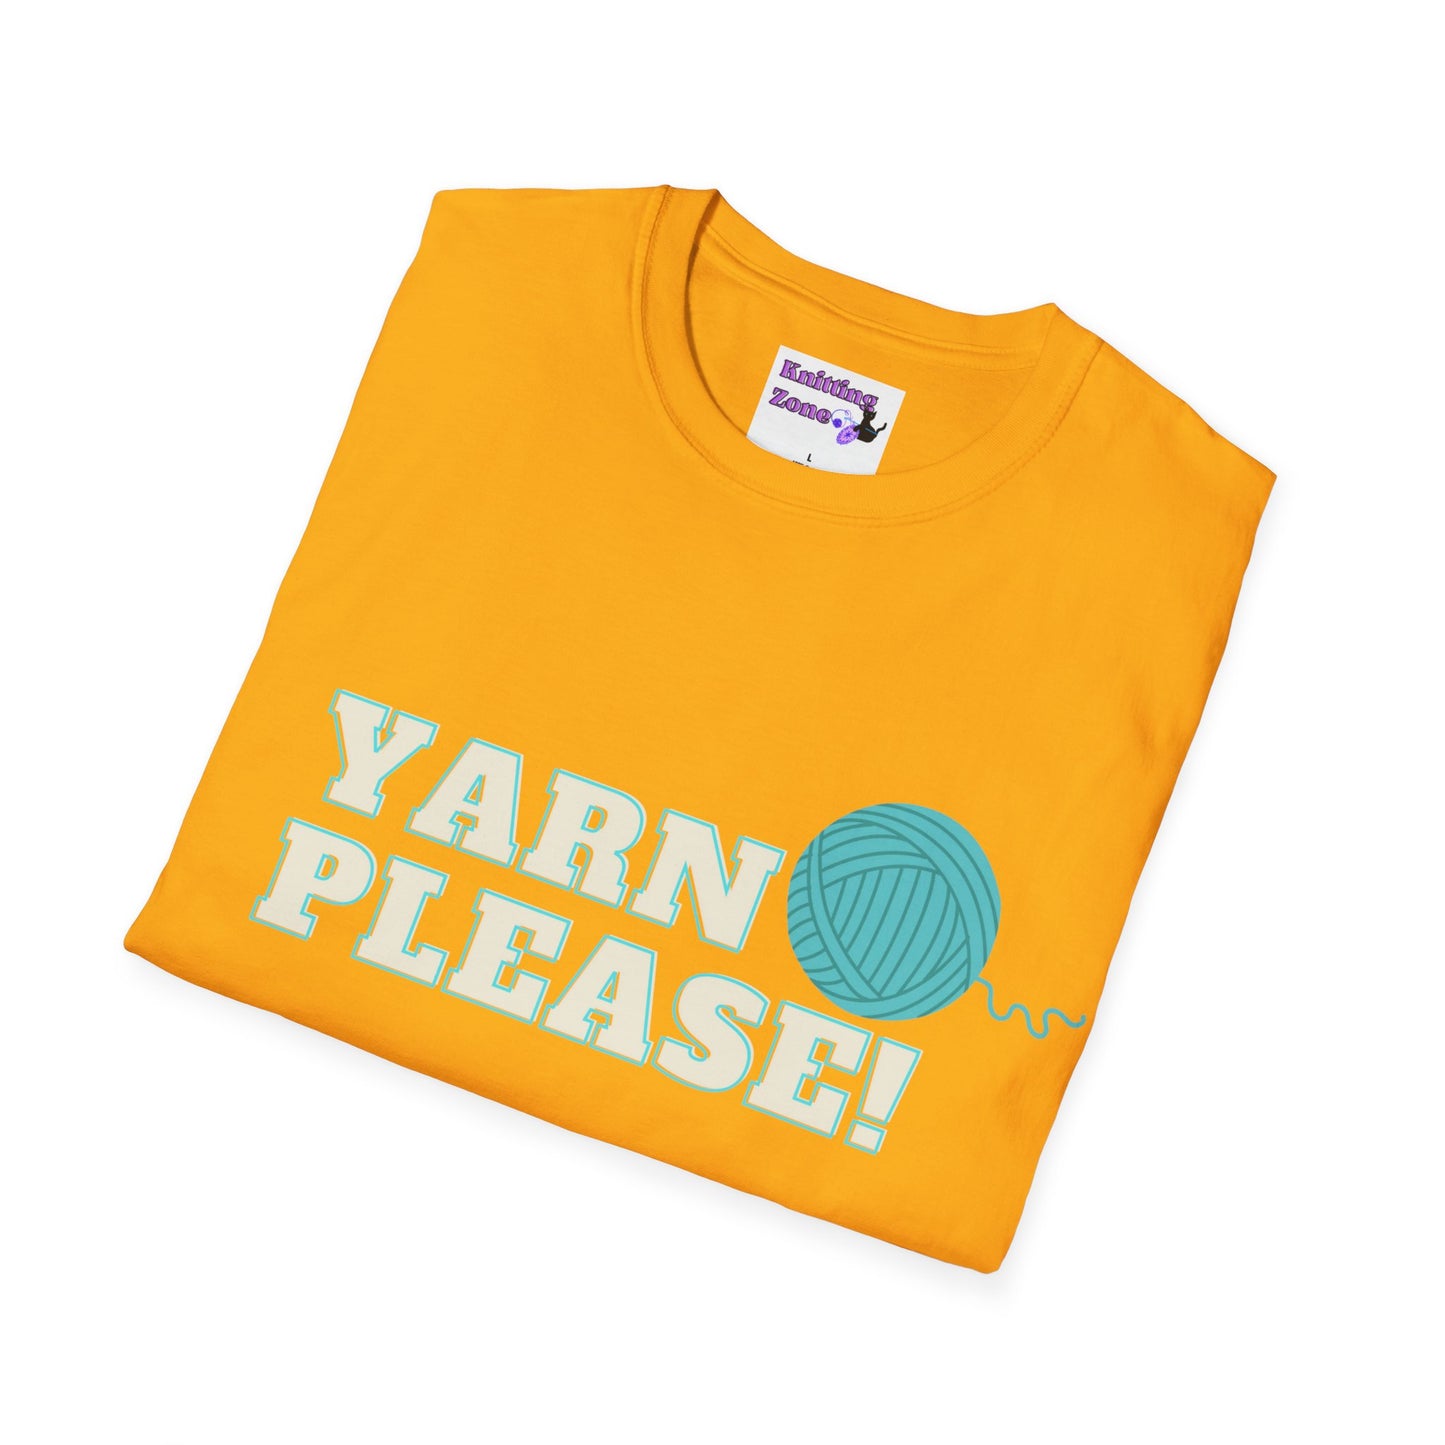 Yarn Please Unisex T Shirt